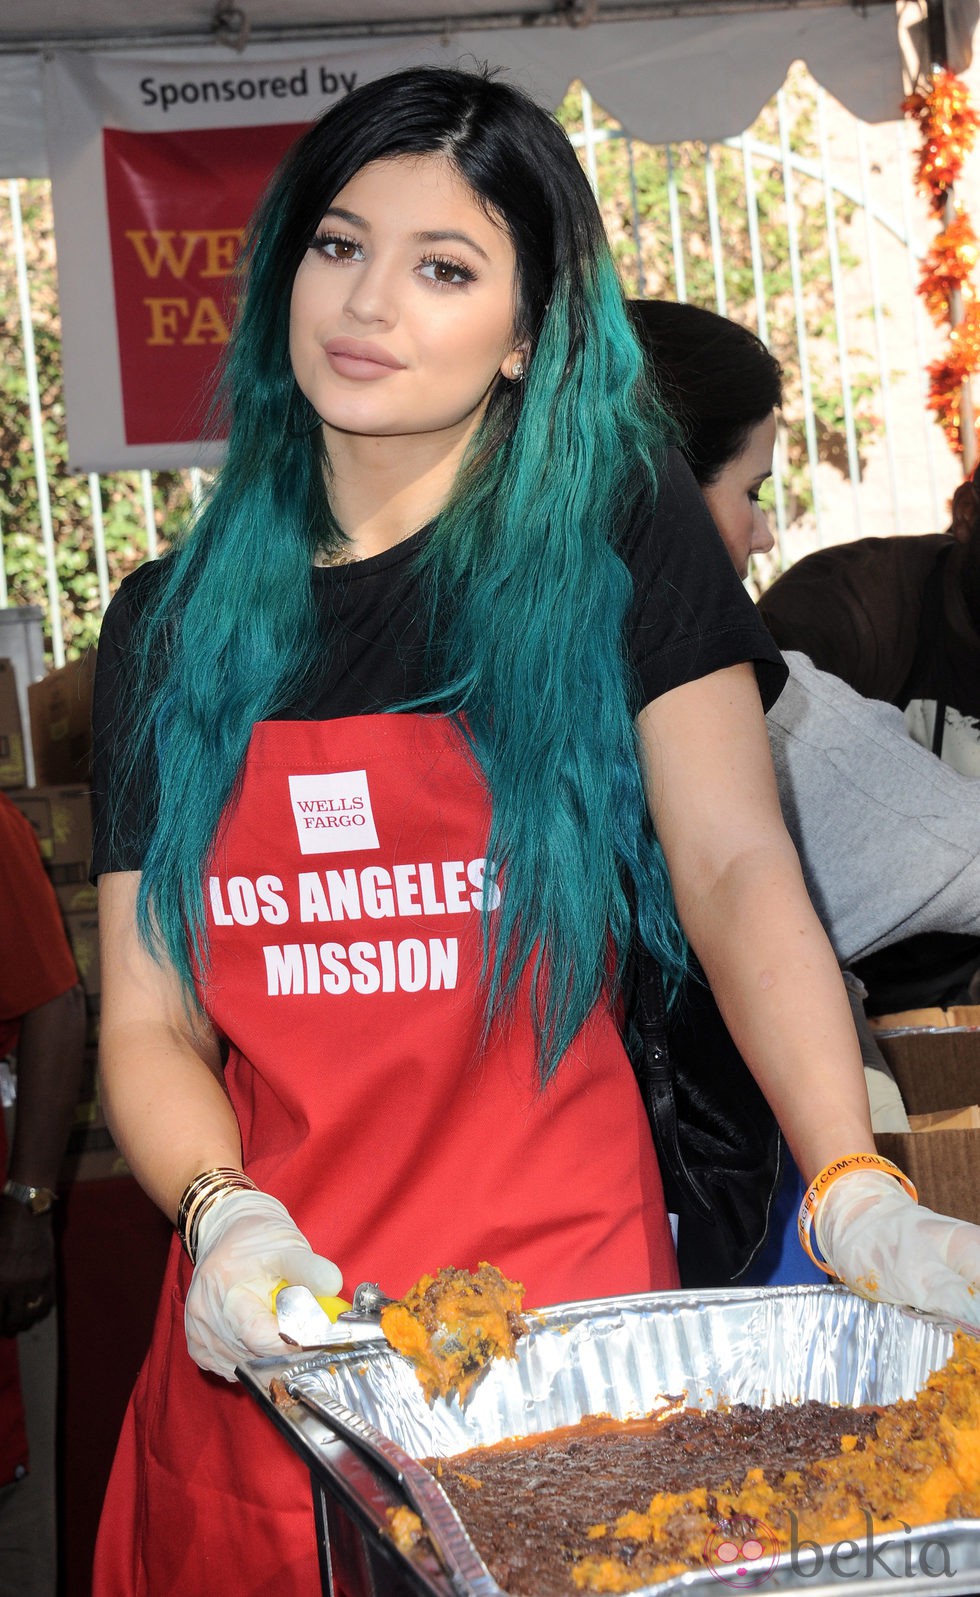 Kylie Jenner participa en una comida benéfica de Acción de Gracias